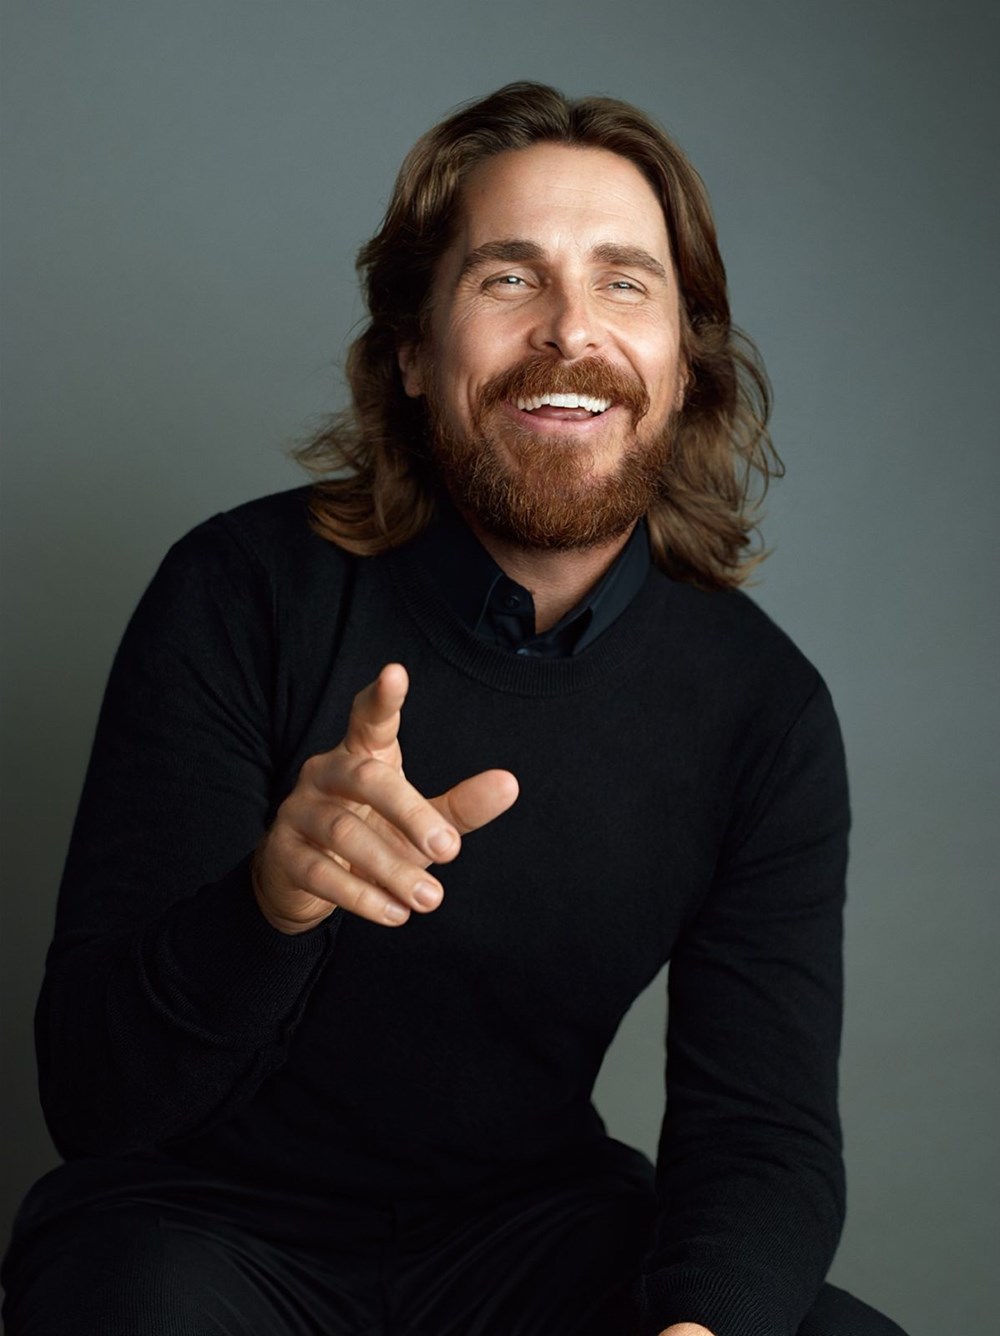 Guiness Rekorlar Kitabı'na giren Christian Bale, 47. yaşını kutluyor.